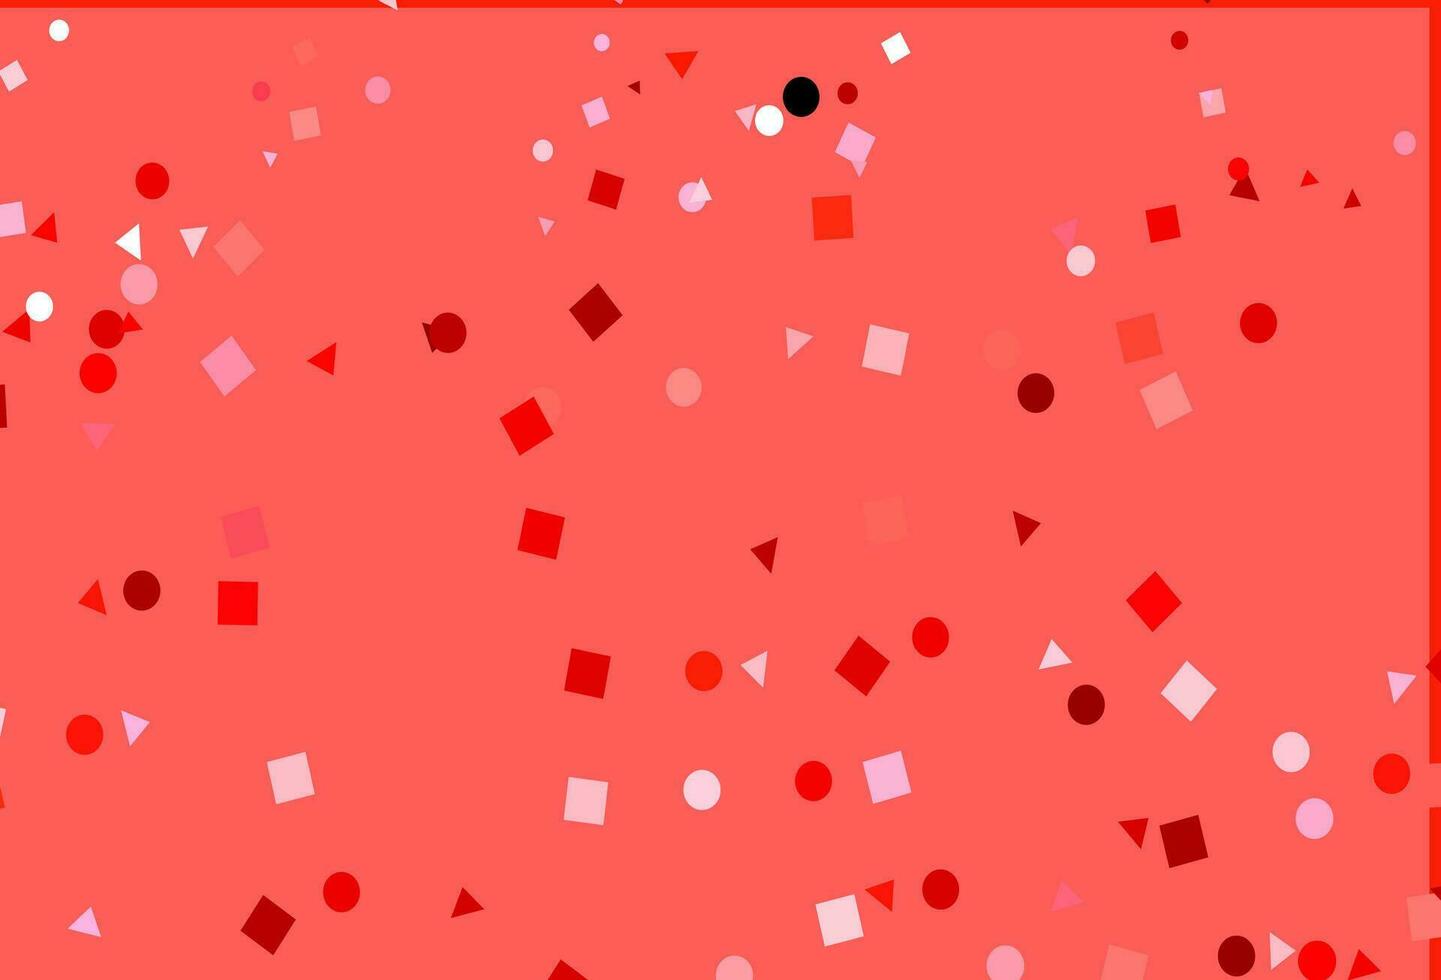 modelo de vetor de luz vermelha com cristais, círculos, quadrados.